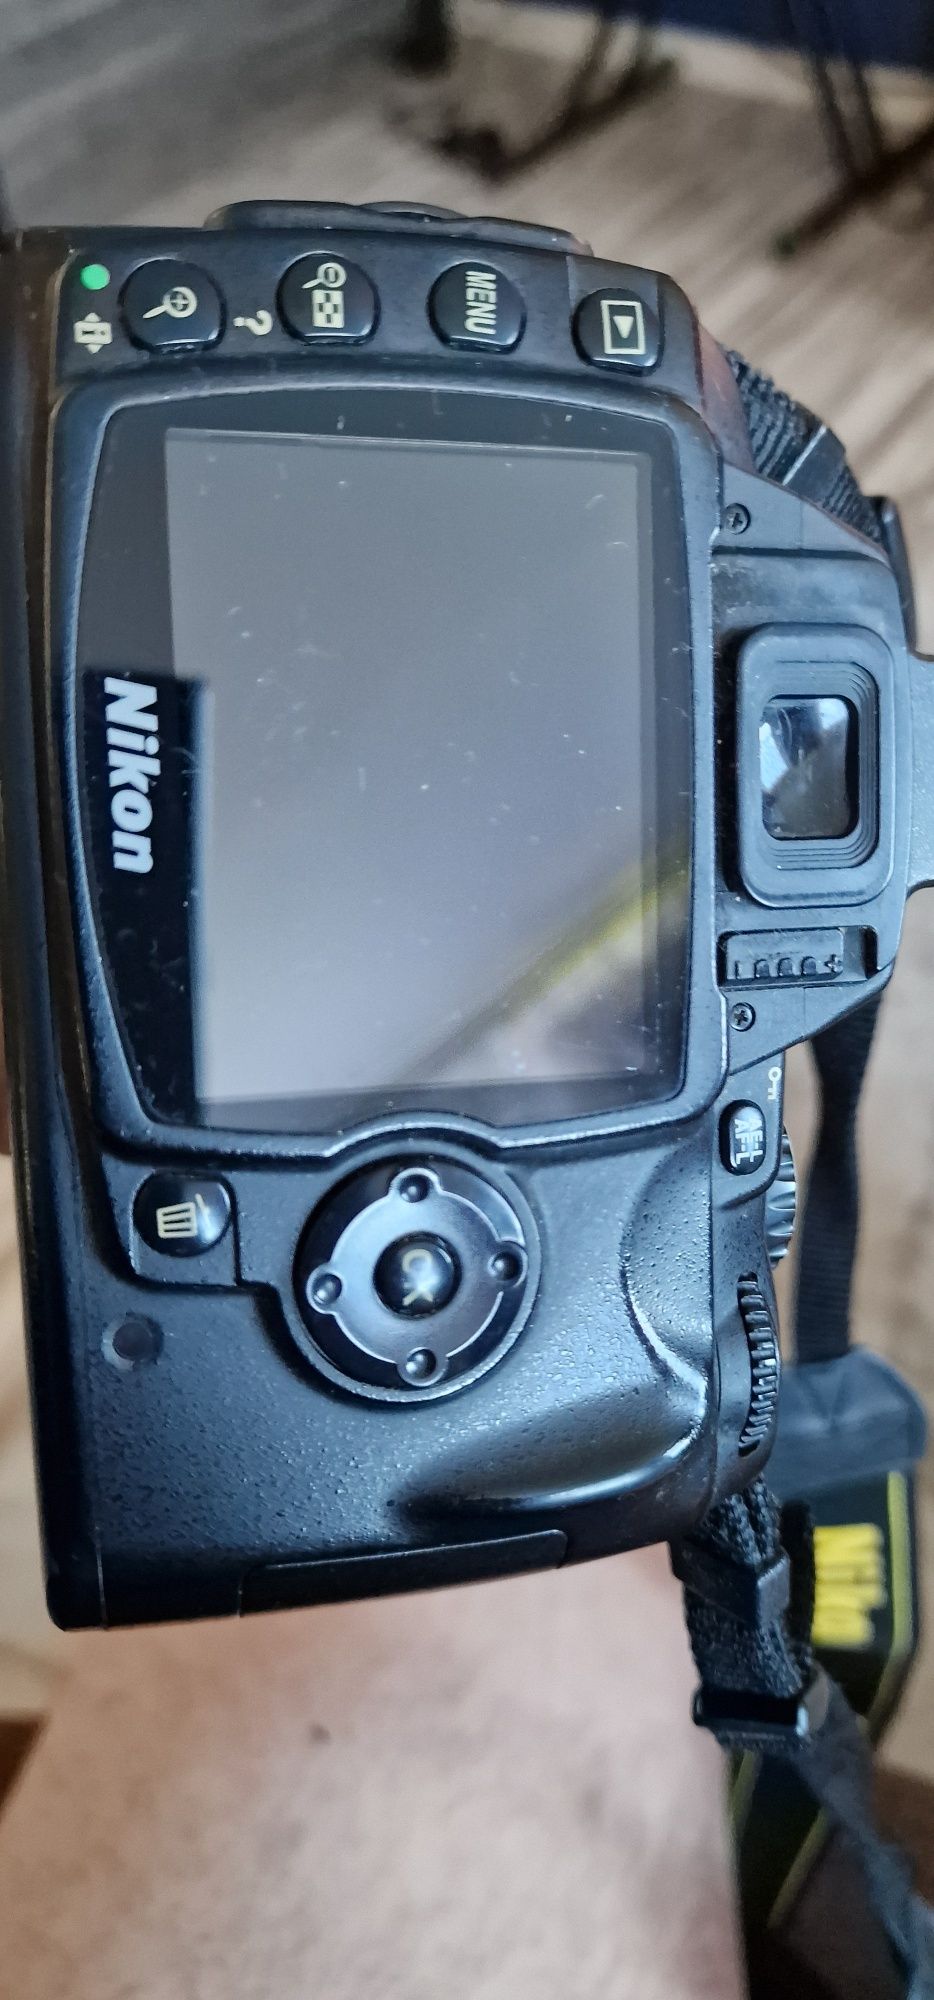 Aparat lustrzanka Nikon D 40